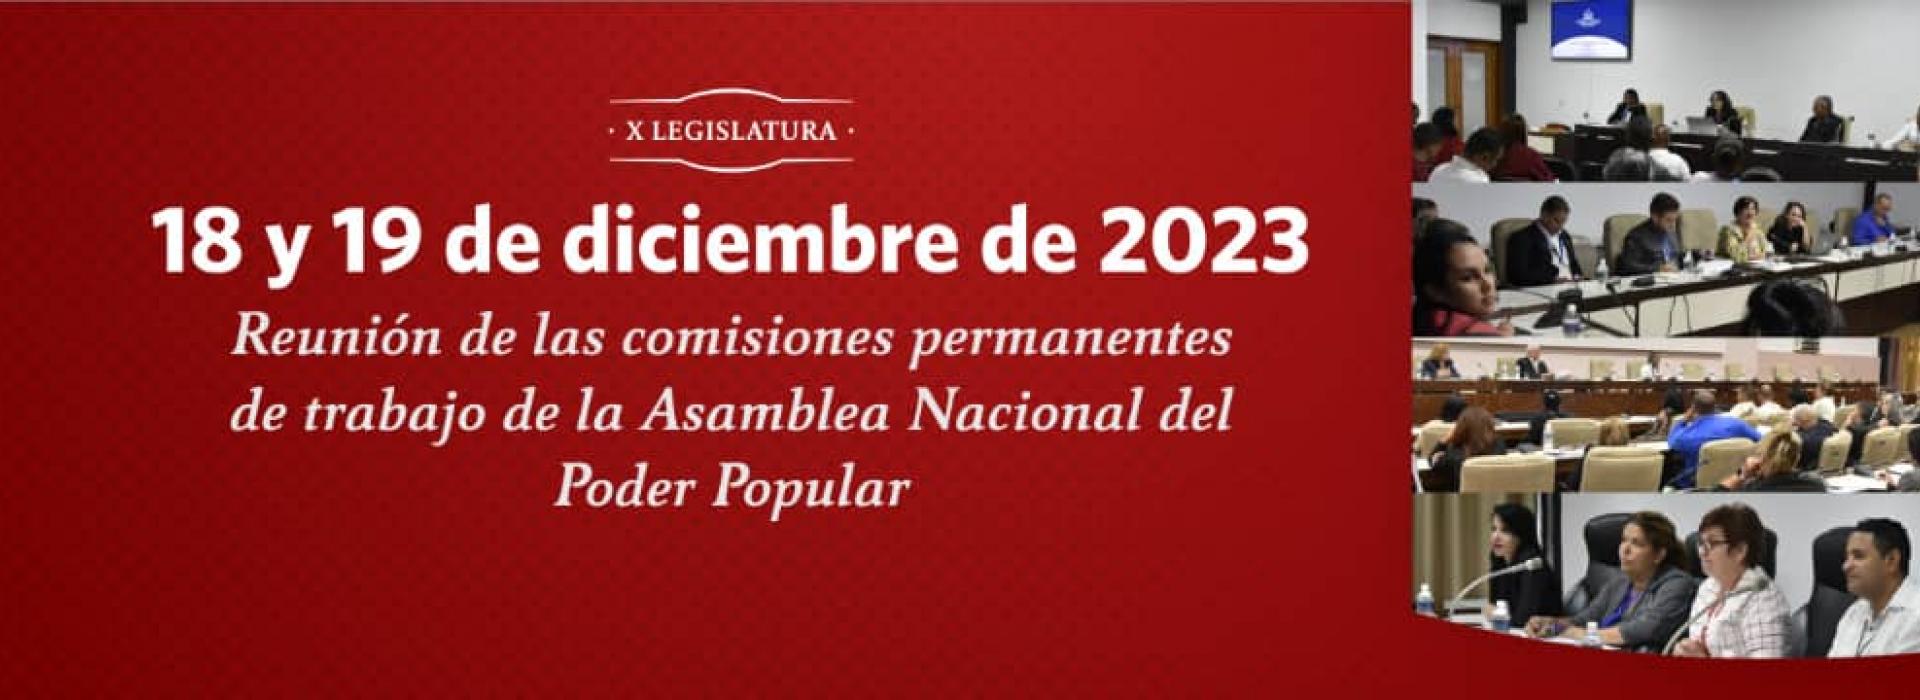 La agenda del pueblo, en el debate de las comisiones de la Asamblea Nacional 